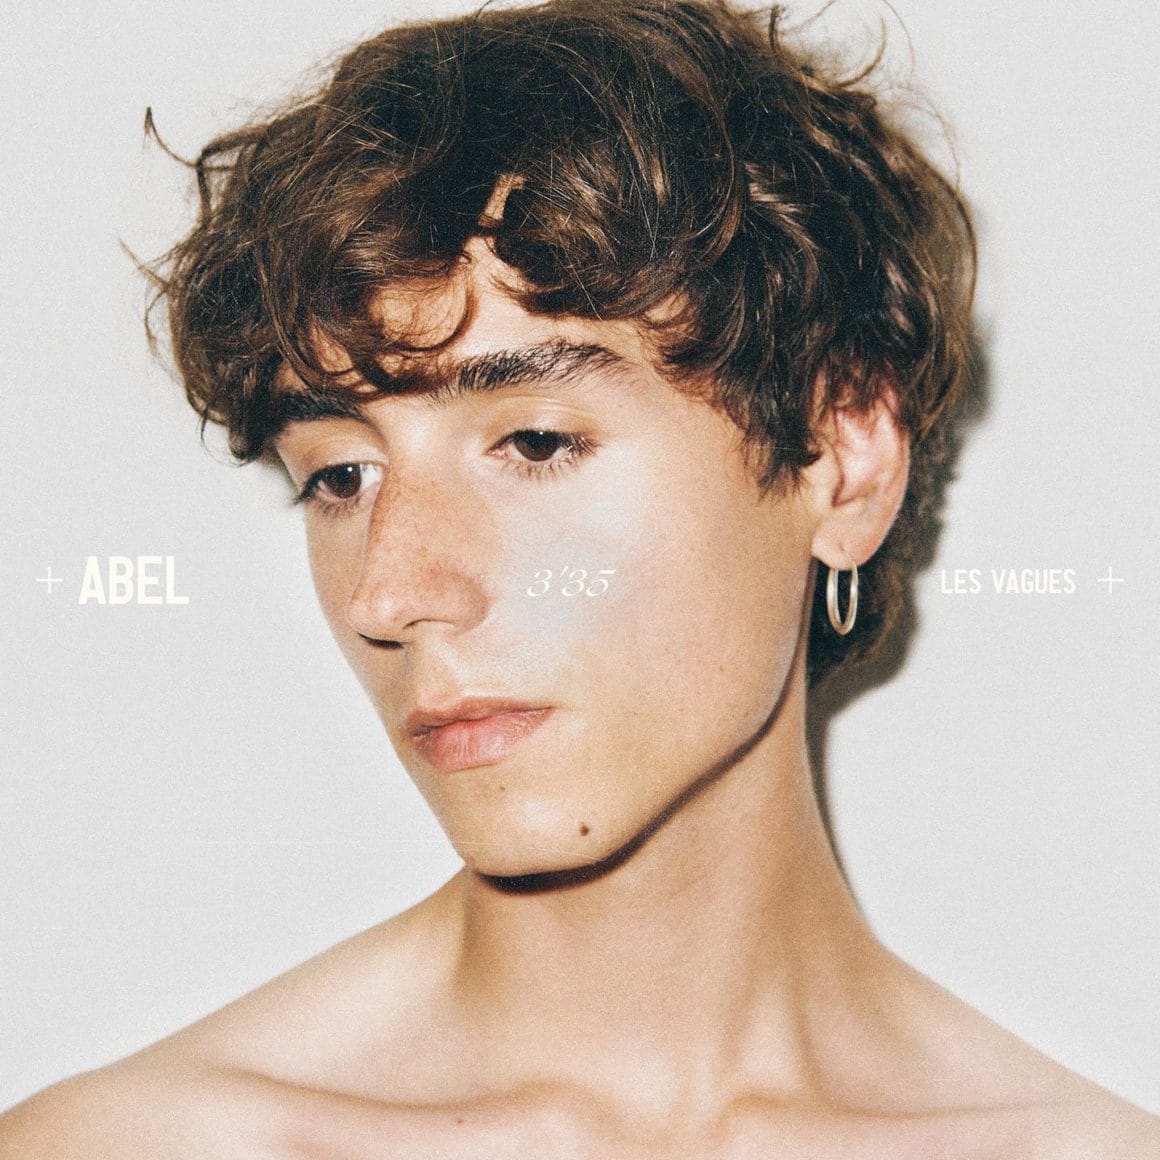 Pochette du single "Les Vagues" d'Abel.